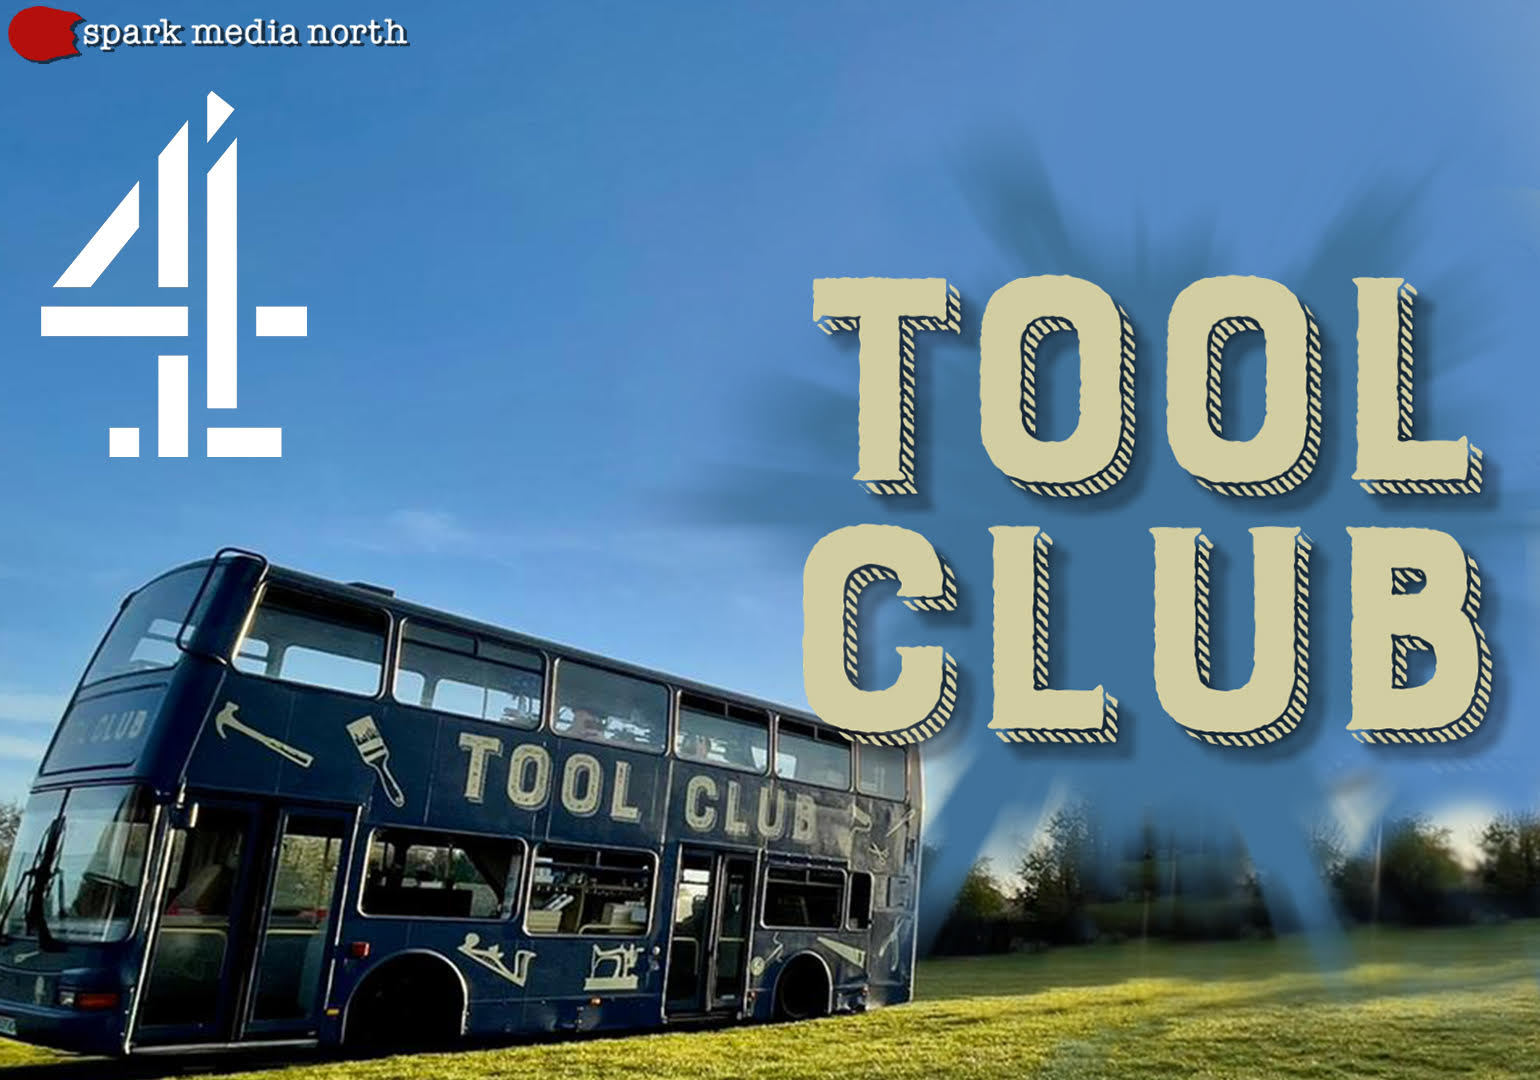 Tool Club